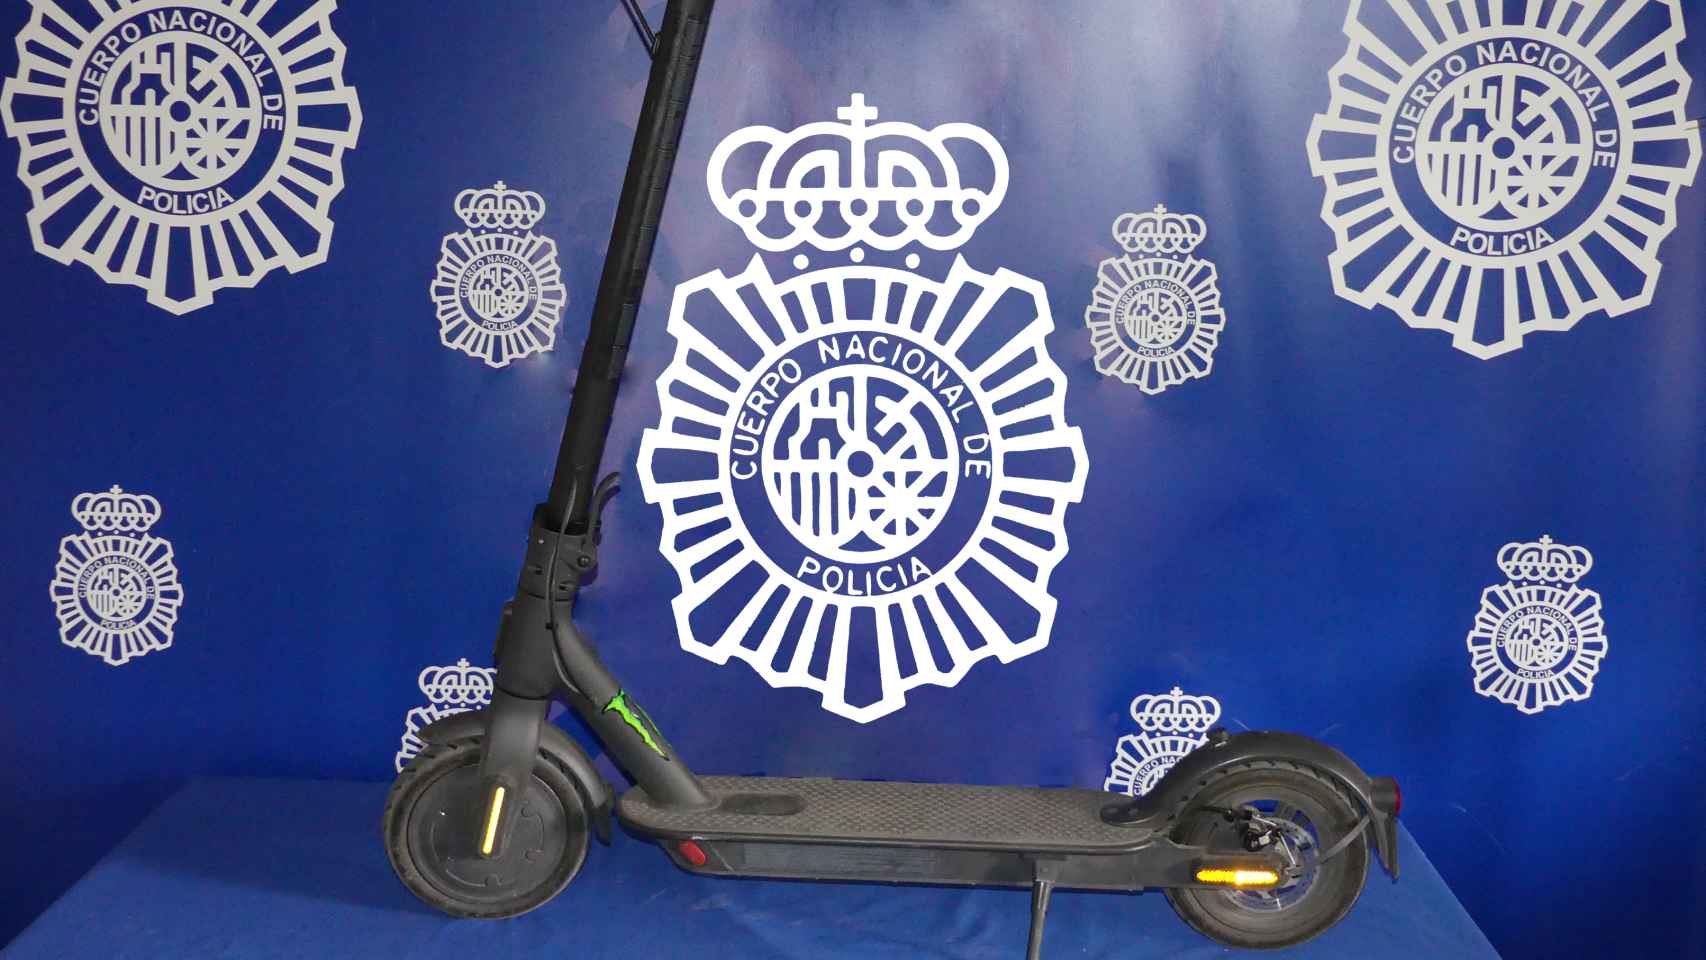 Imagen de un patinete robado en Salamanca facilitada por la Policía Nacional